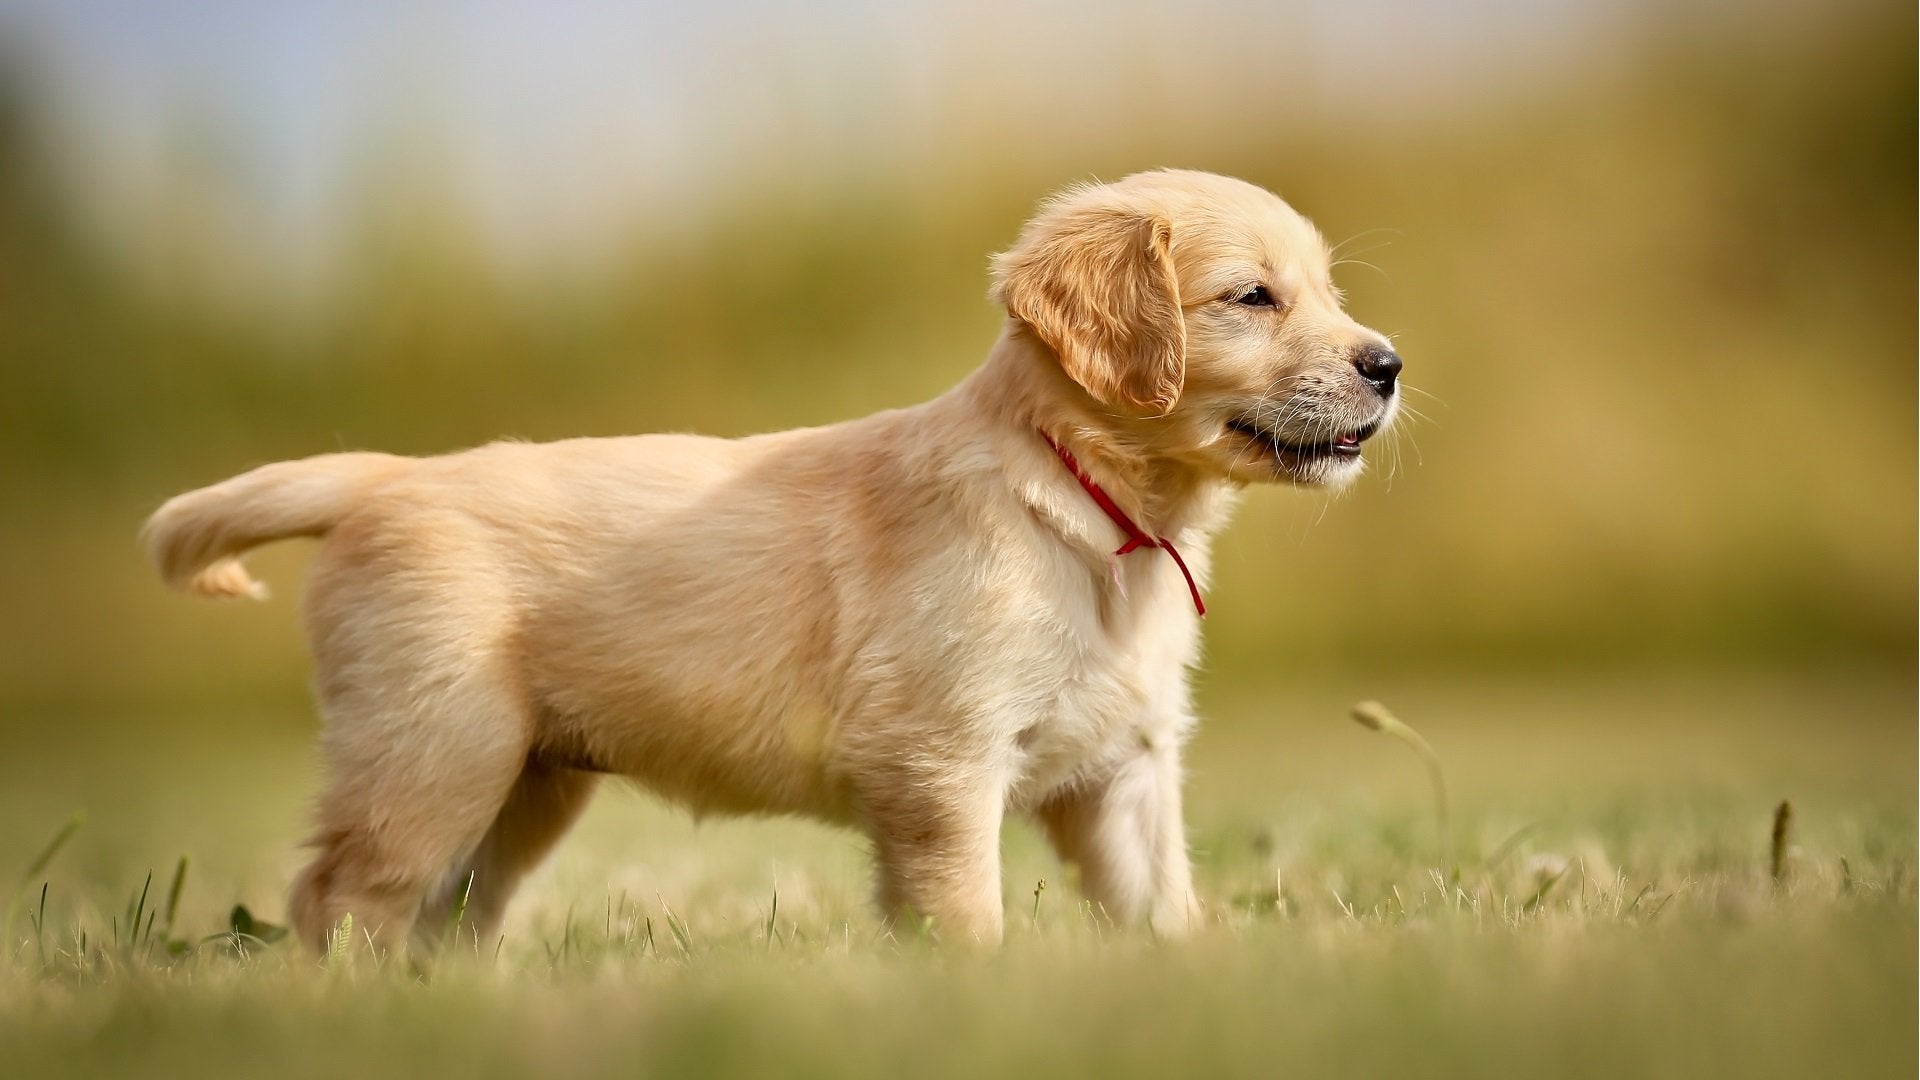 Golden puppy standing on grass in summer